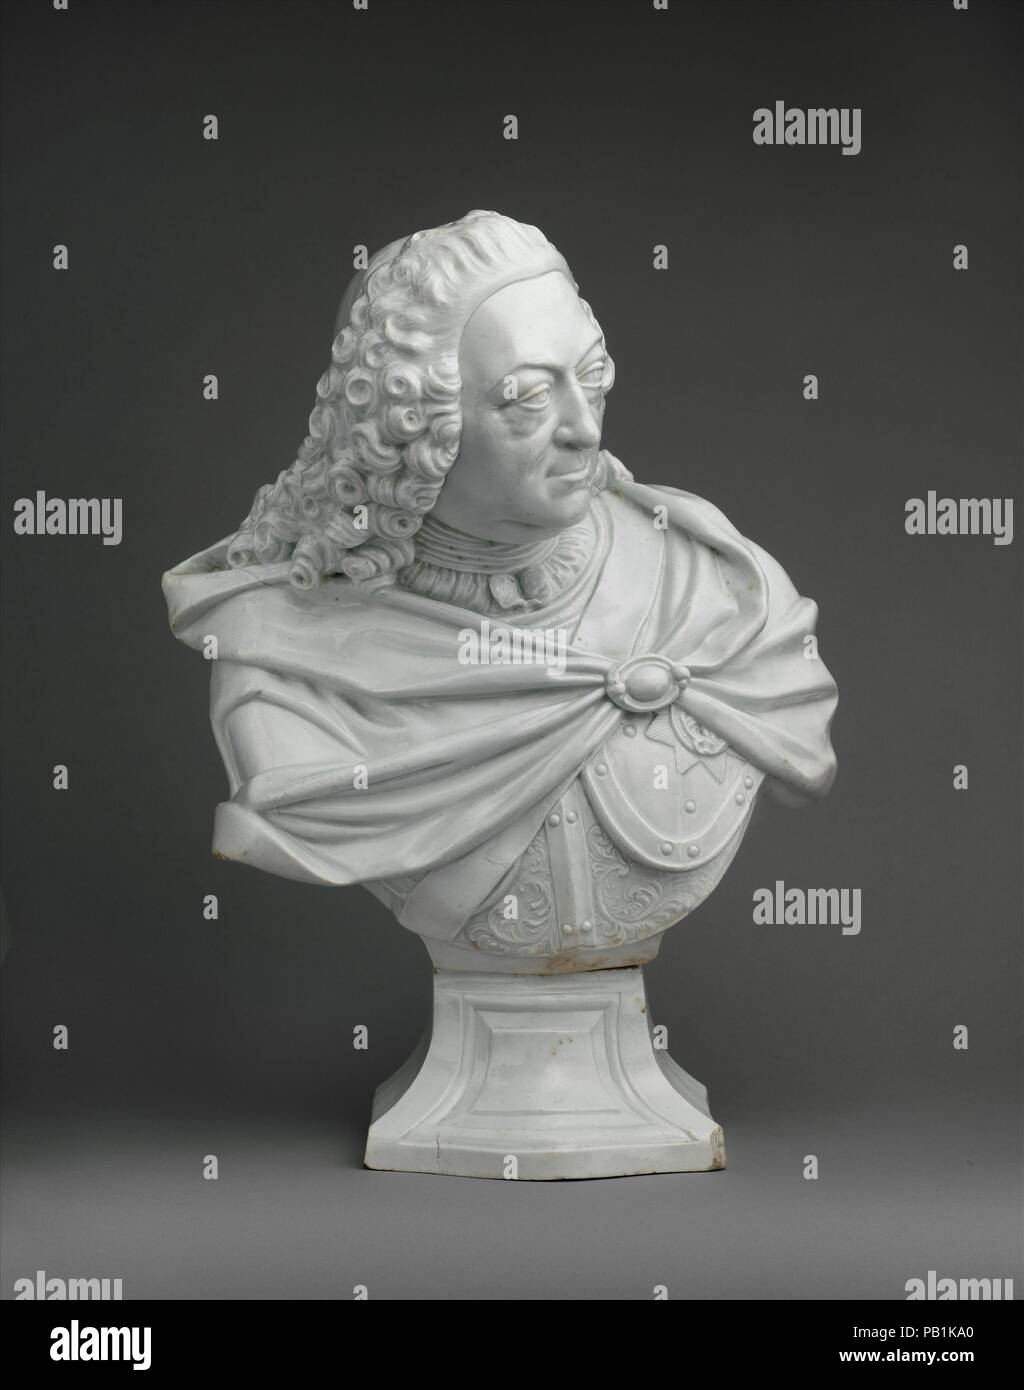 Le Roi George II (1683-1727), règne 1727-60. Culture : British, probablement Vauxhall. Dimensions : hors tout (confirmé) : 7 1/16 × 12 × 5/8 6 7/8 in. (17,9 × 32,1 × 17,5 cm). Manufacture : Vauxhall (British, ca. 1753-ca. 1763). Date : ca. 1760. Le roi porte une cuirasse d'officier de cavalerie sous son manteau militaire, symbole de son rôle pendant la Guerre de Succession d'Autriche (1740-48). George II a dirigé personnellement la charge de cavalerie Hanovrienne, britannique, et des troupes à Austiran leur victoire sur une force française supérieure à la bataille de Dettingen, 1743. Musée : Metropolitan Museum of Art, New York, USA. Banque D'Images